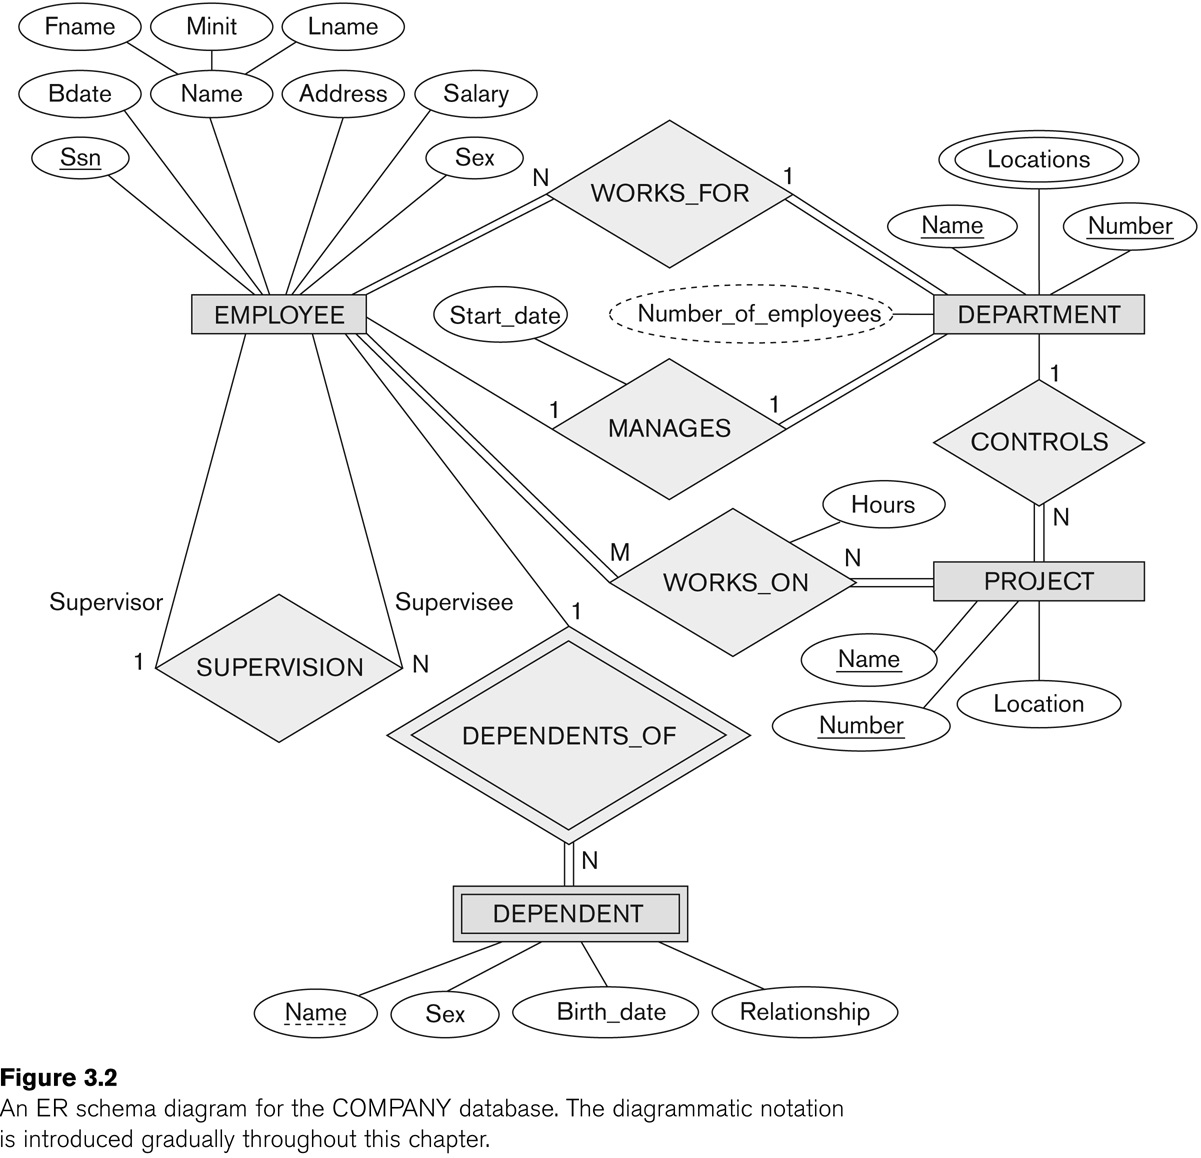 Entity-Relationship Modeling in Er Diagram Chen Model